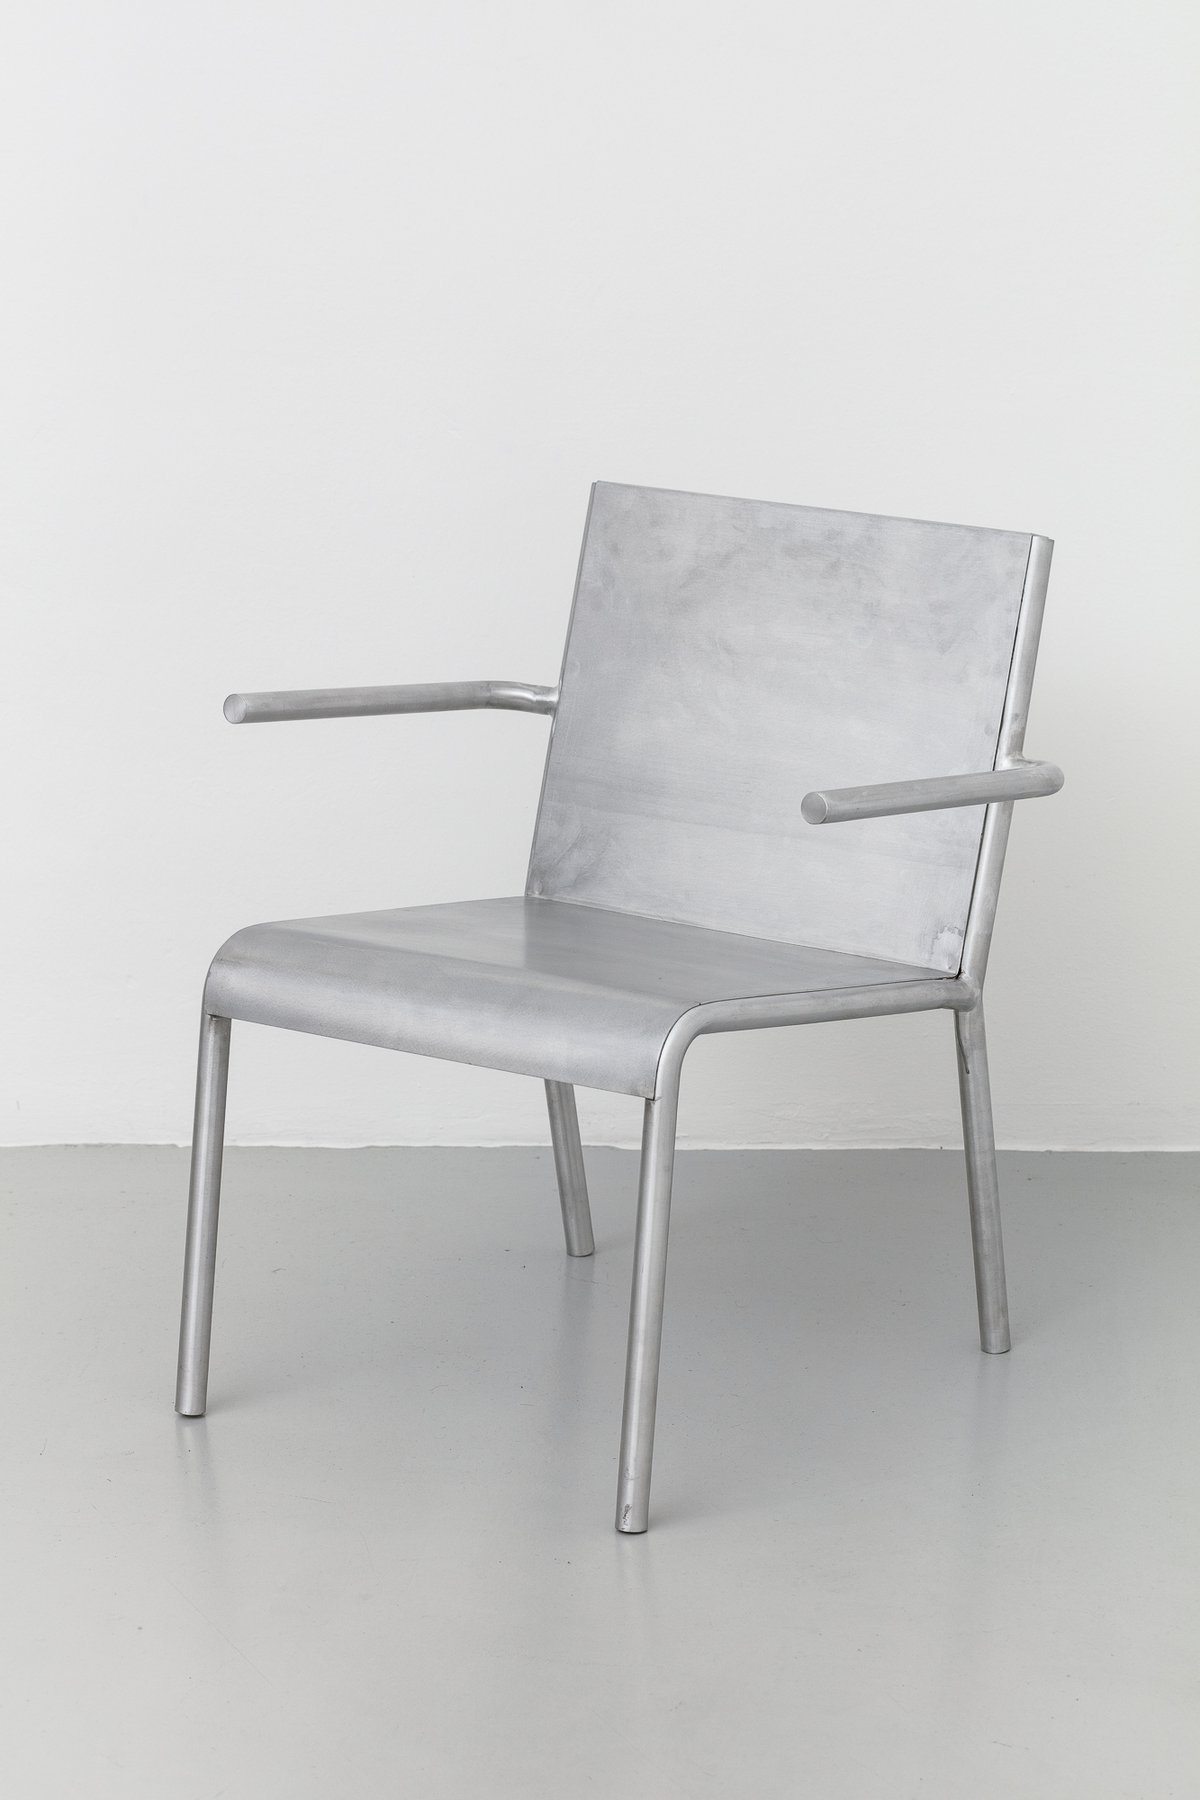 Benjamin HirteAloa Chair, 2020Aluminium70 x 50 x 65 cm